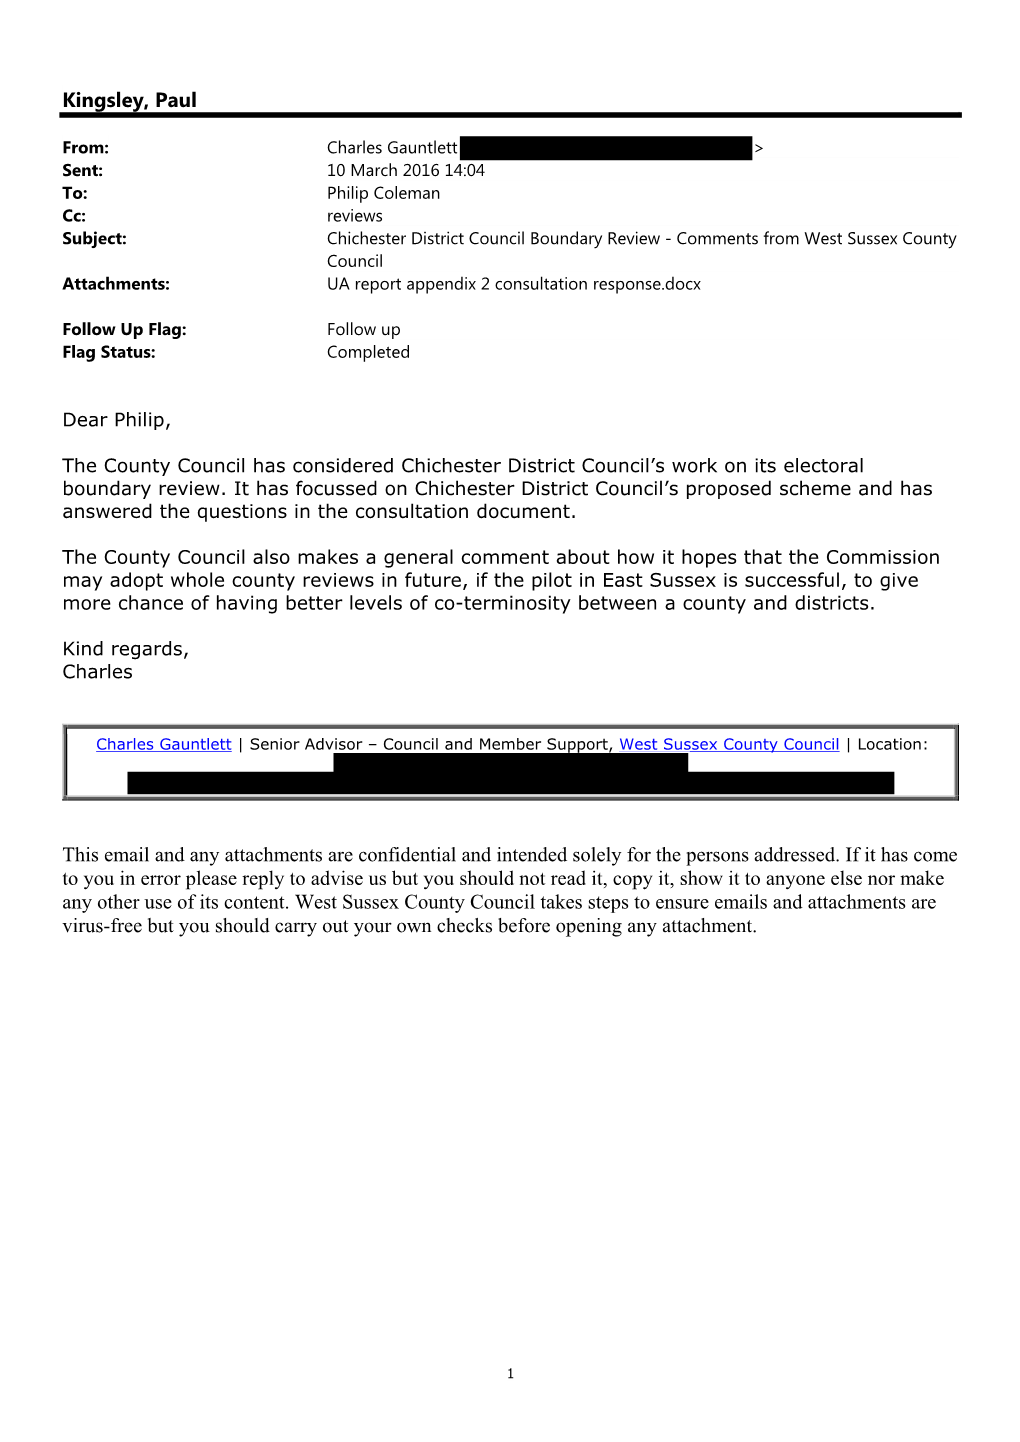 West Sussex County Council Attachments: UA Report Appendix 2 Consultation Response.Docx